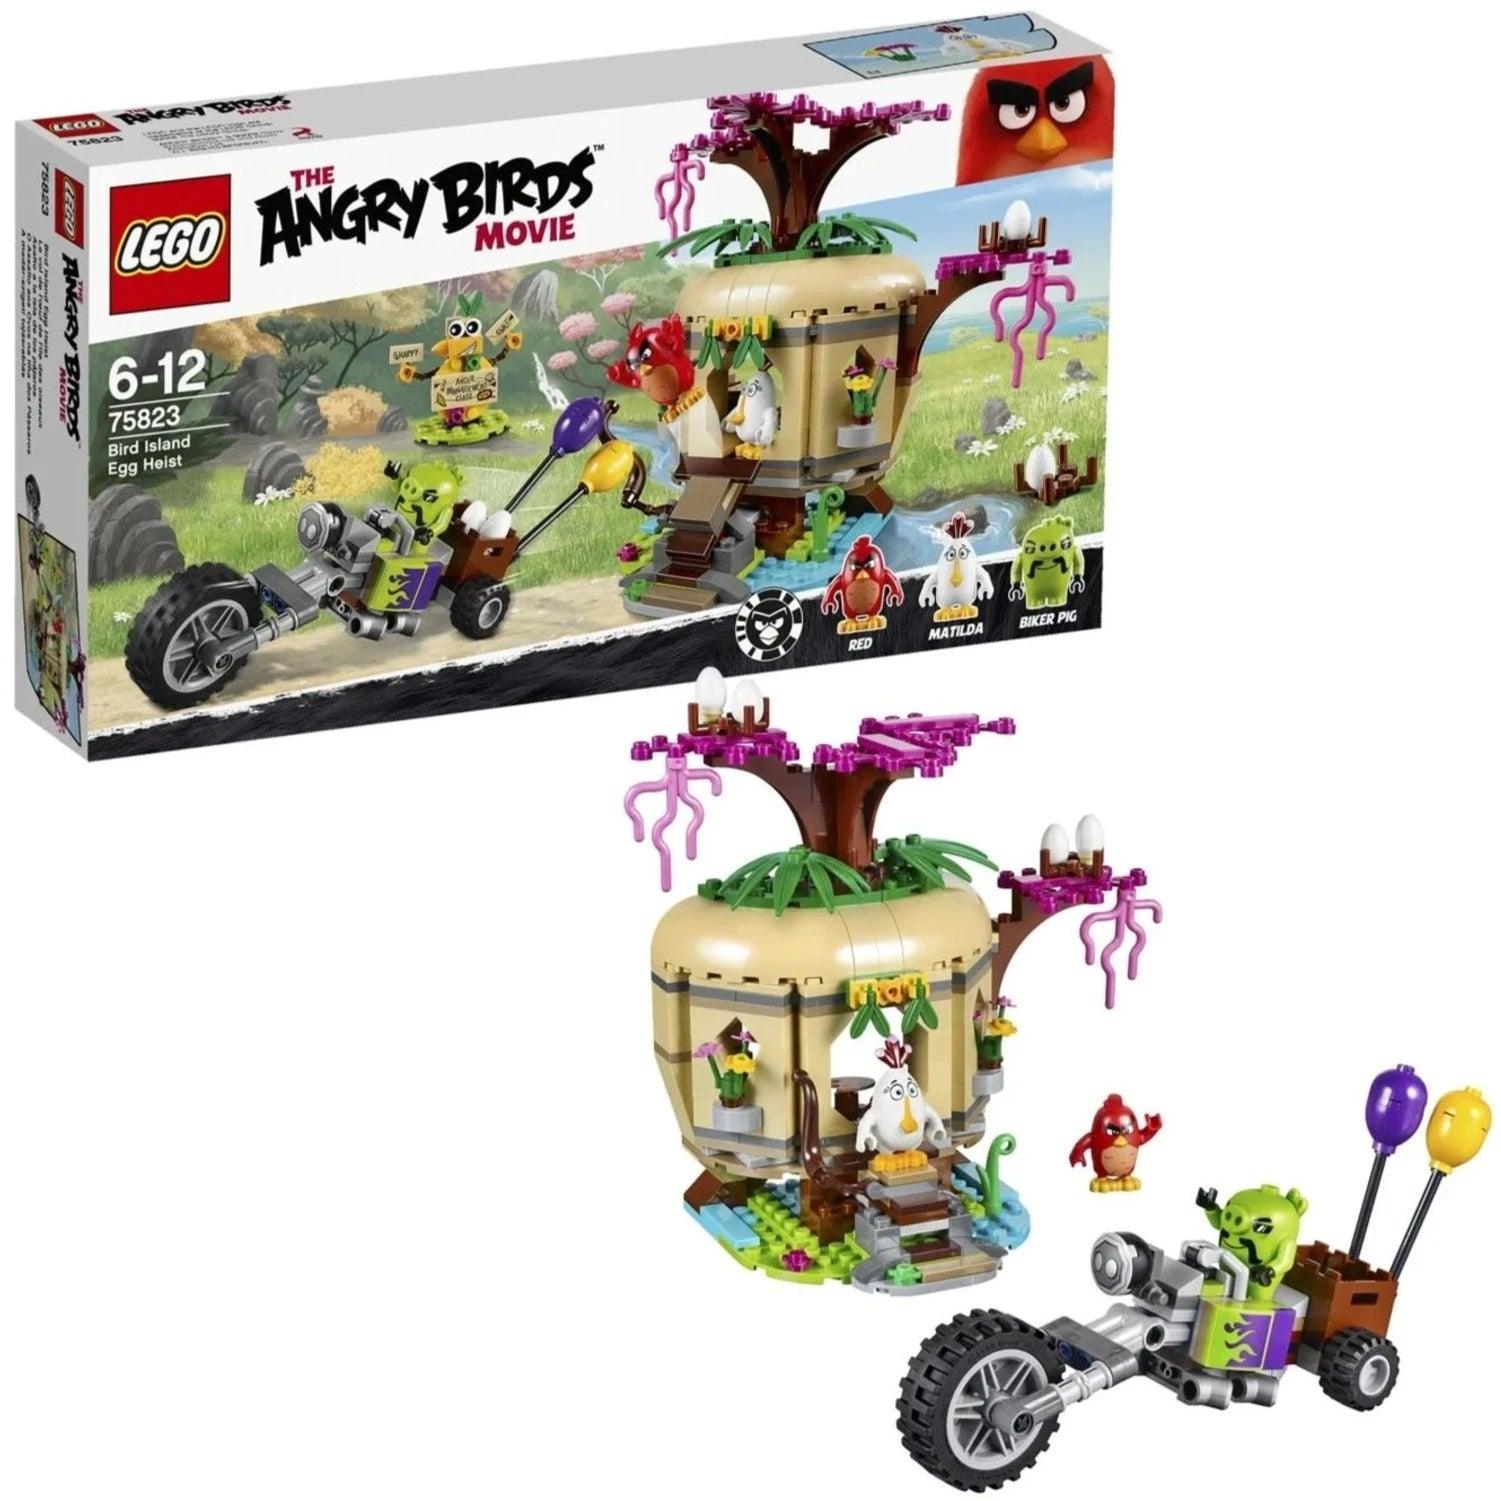 LEGO Bird Island eierenroof 75823 Angry Birds | 2TTOYS ✓ Official shop<br>